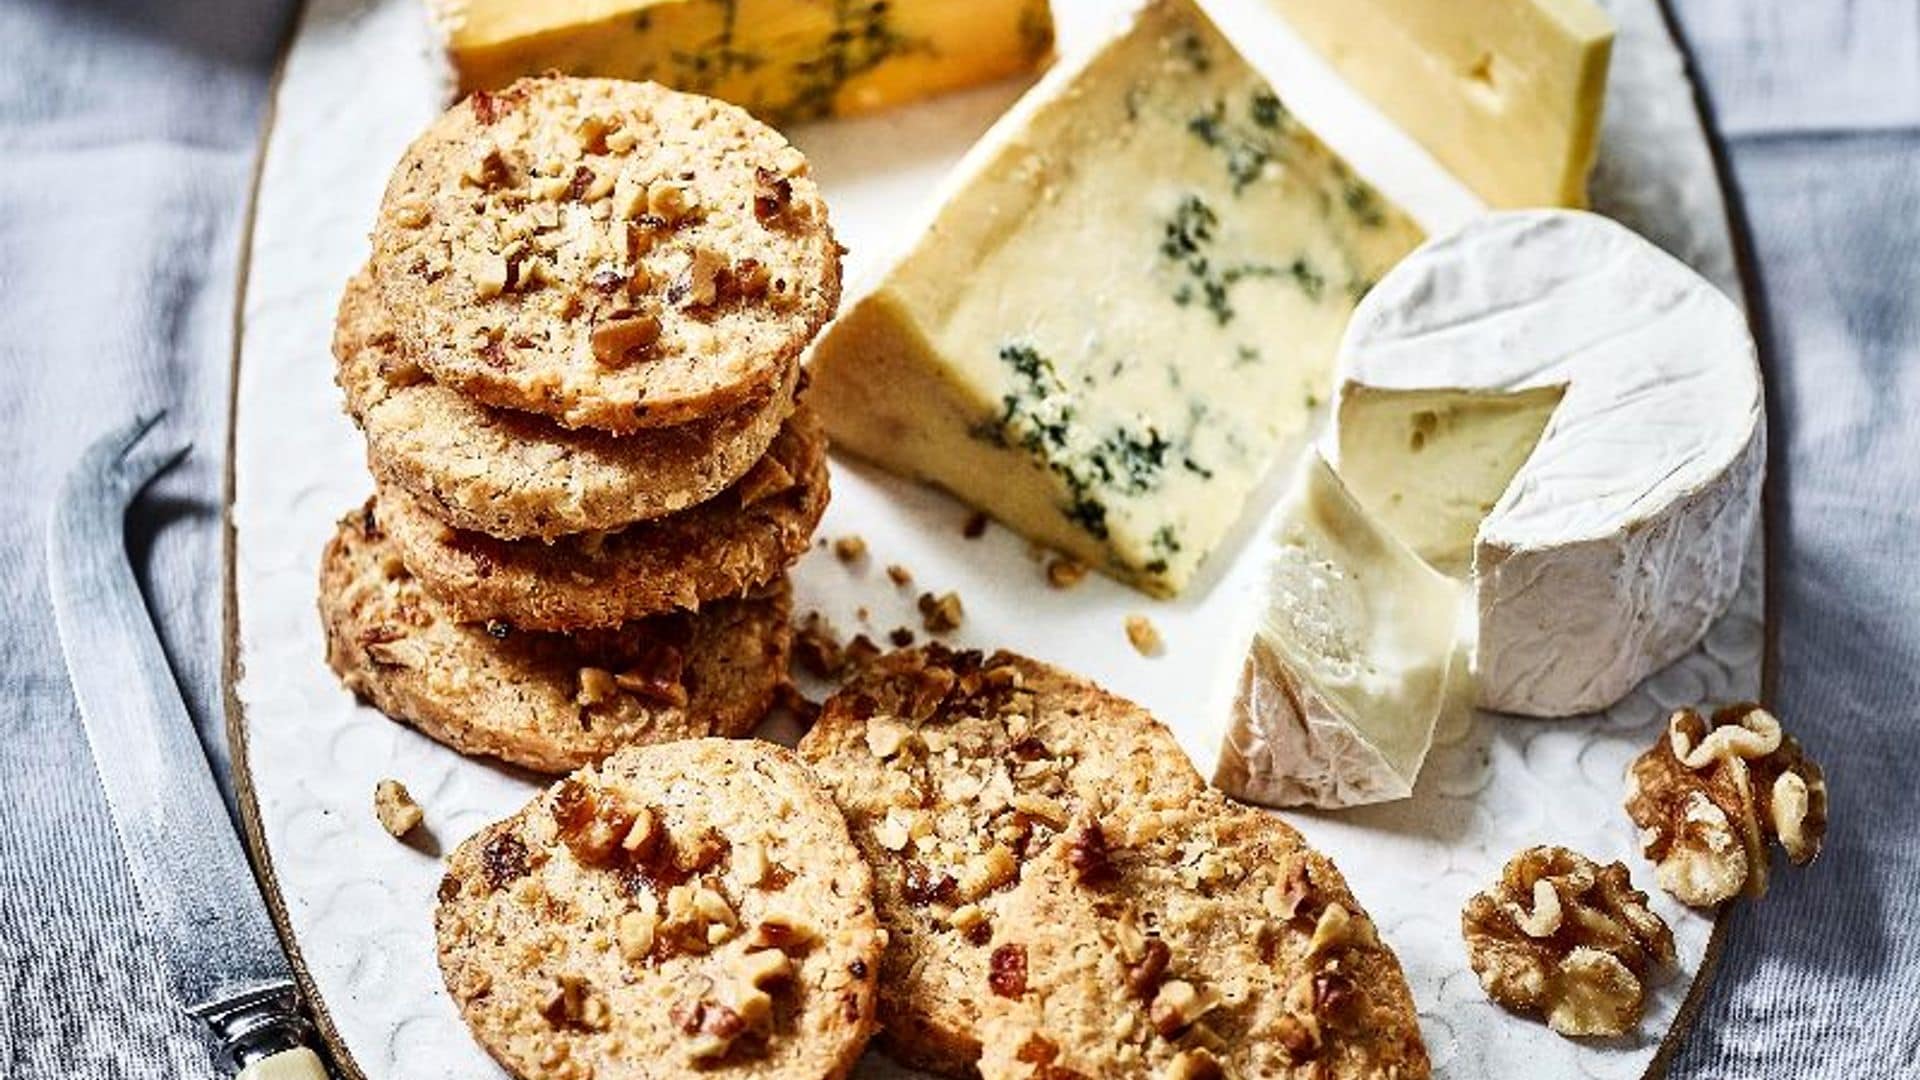 Tabla de quesos con galletas de nueces y albaricoque